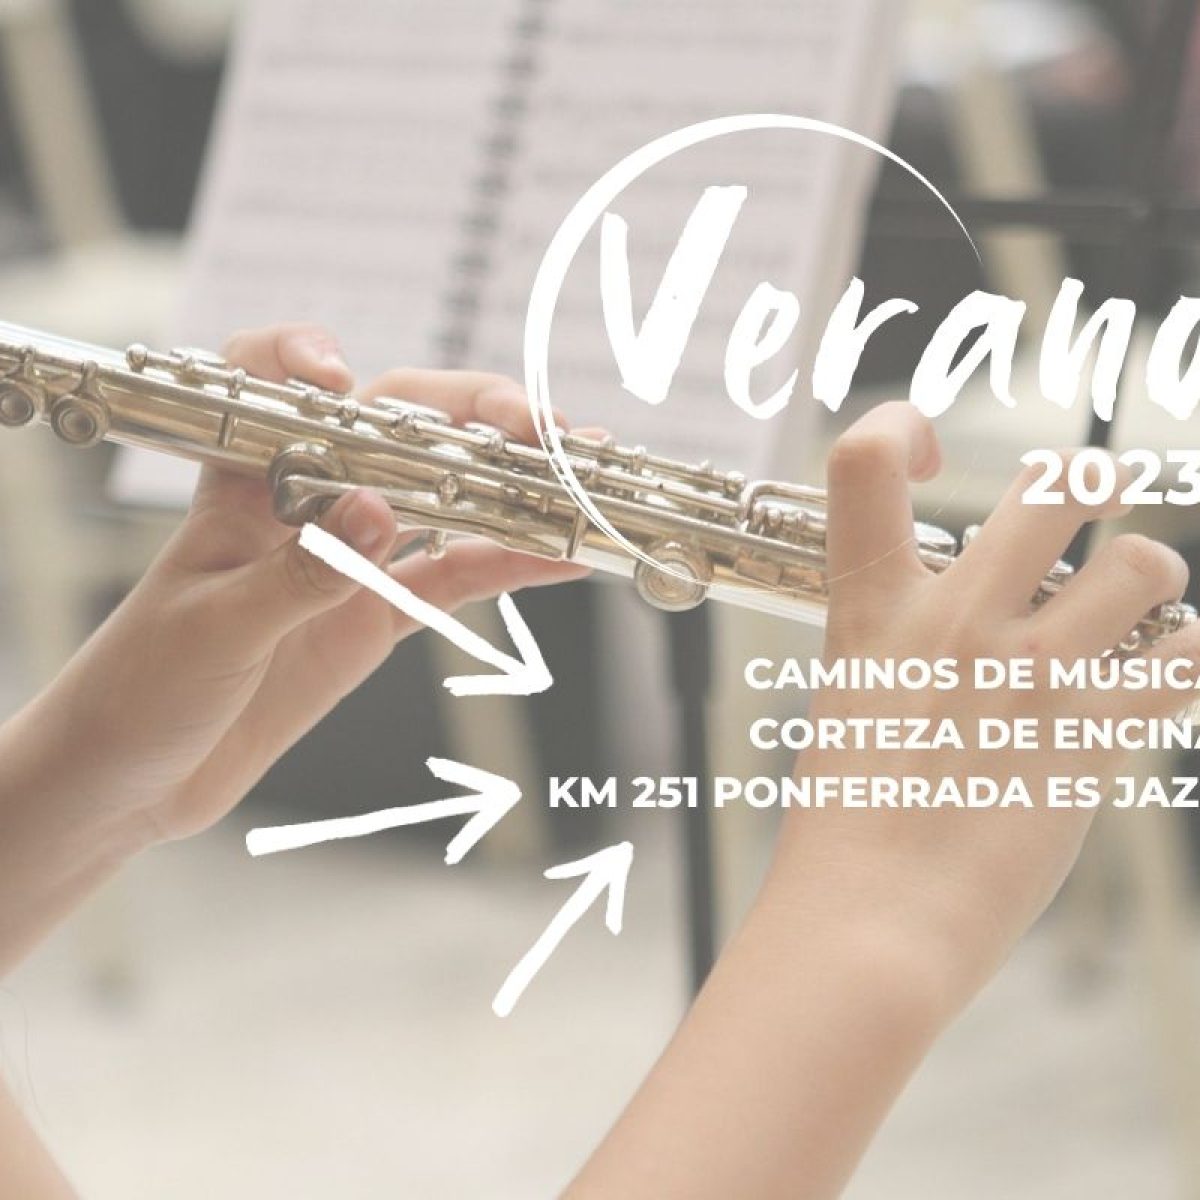 Avance música verano 2023 en Ponferrada